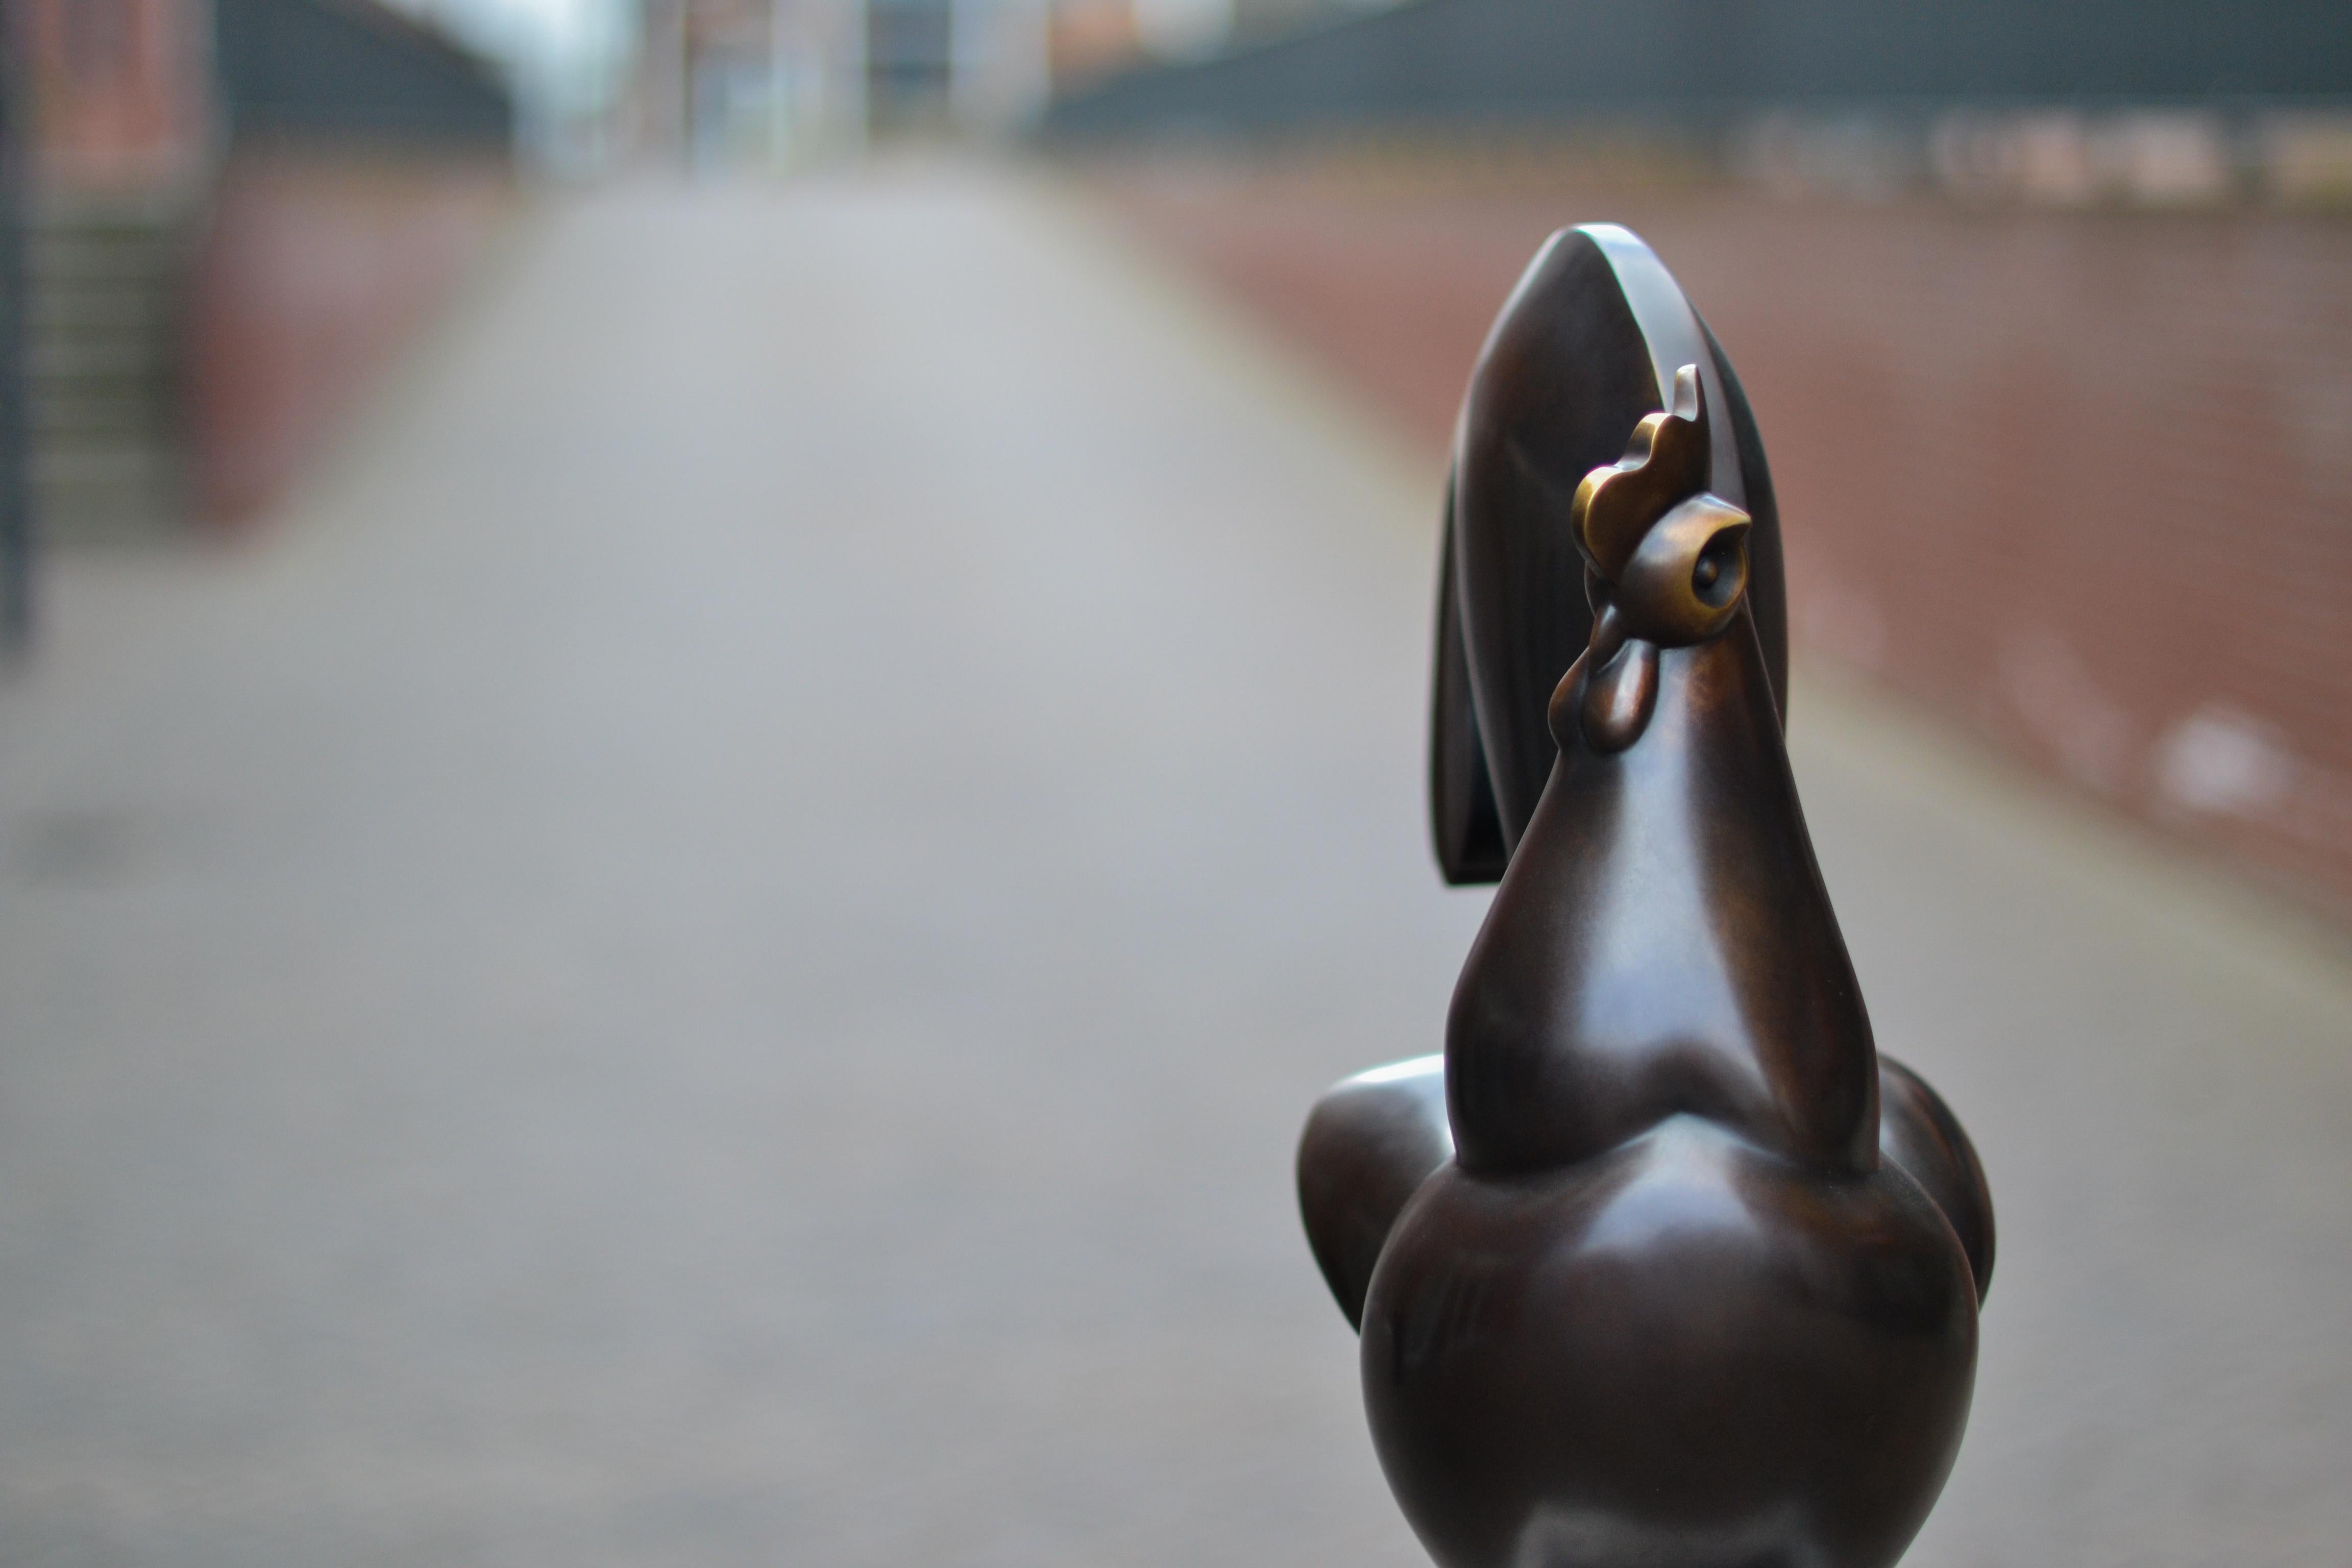 contemporary bronze sculpture artists